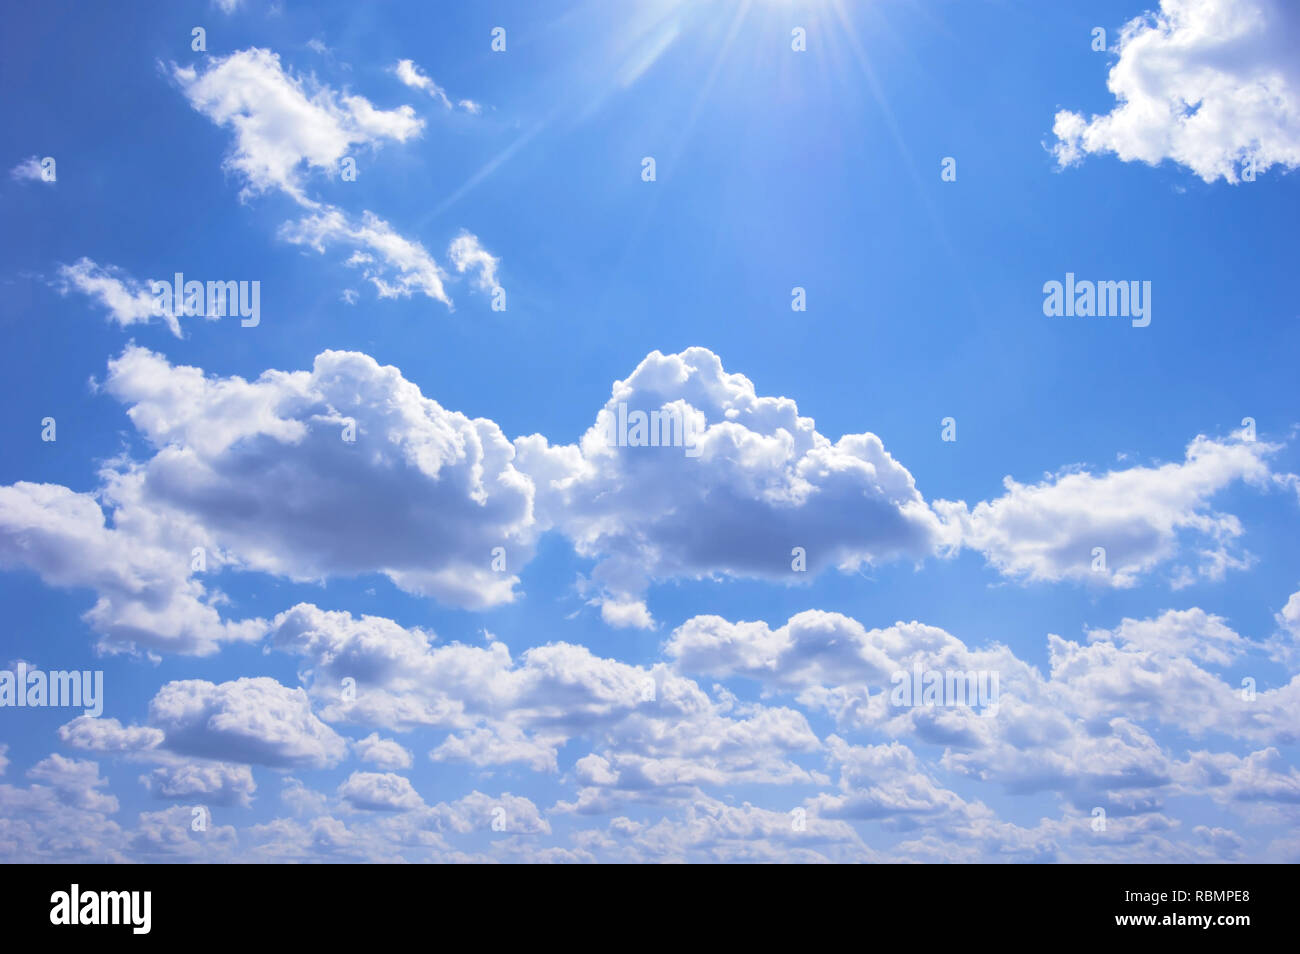 Beaucoup de nuages dans le ciel bleu. Journée ensoleillée. Place pour le texte Banque D'Images